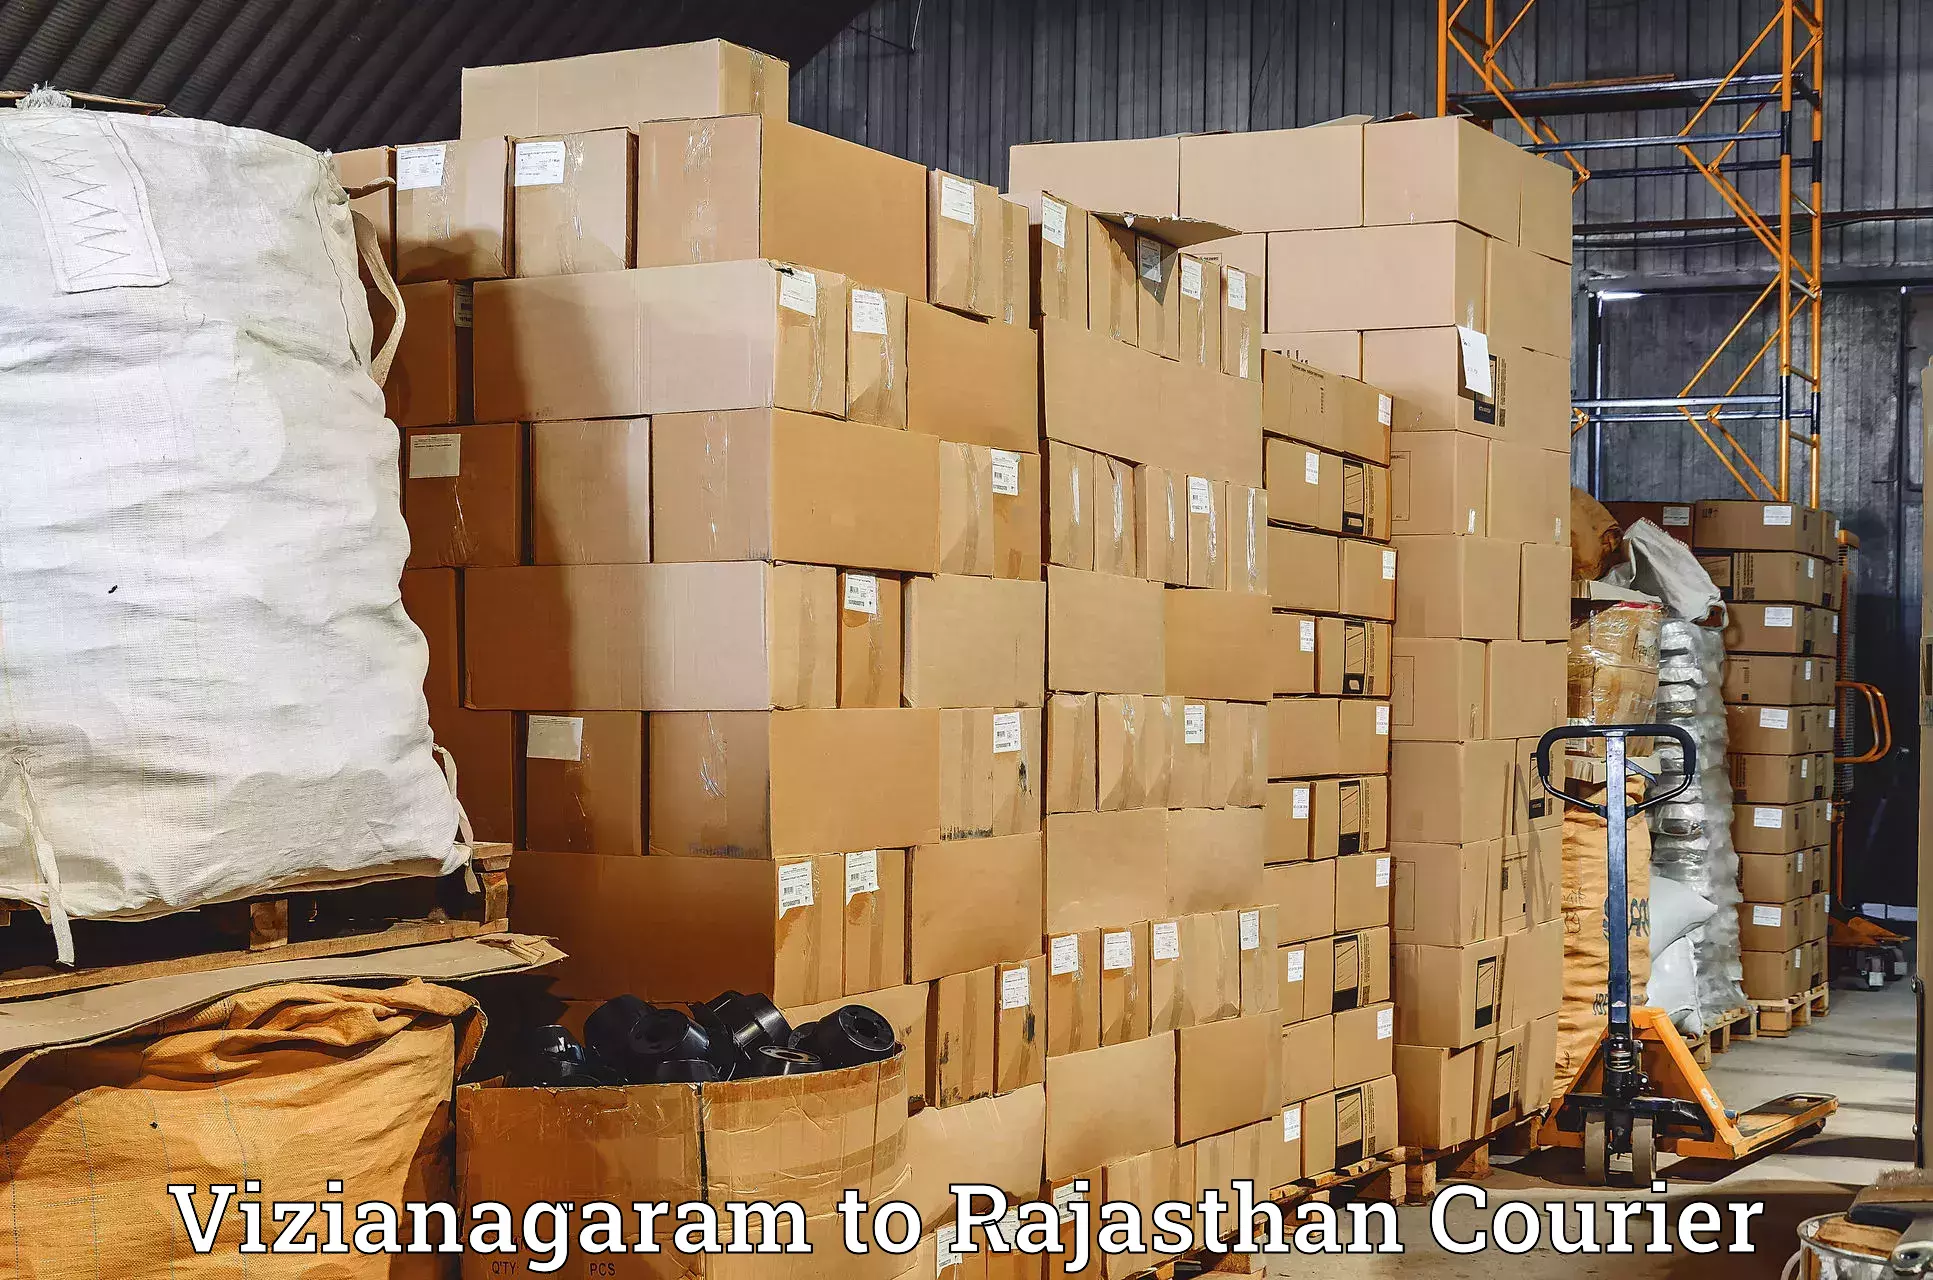 Express logistics service Vizianagaram to Kushalgarh